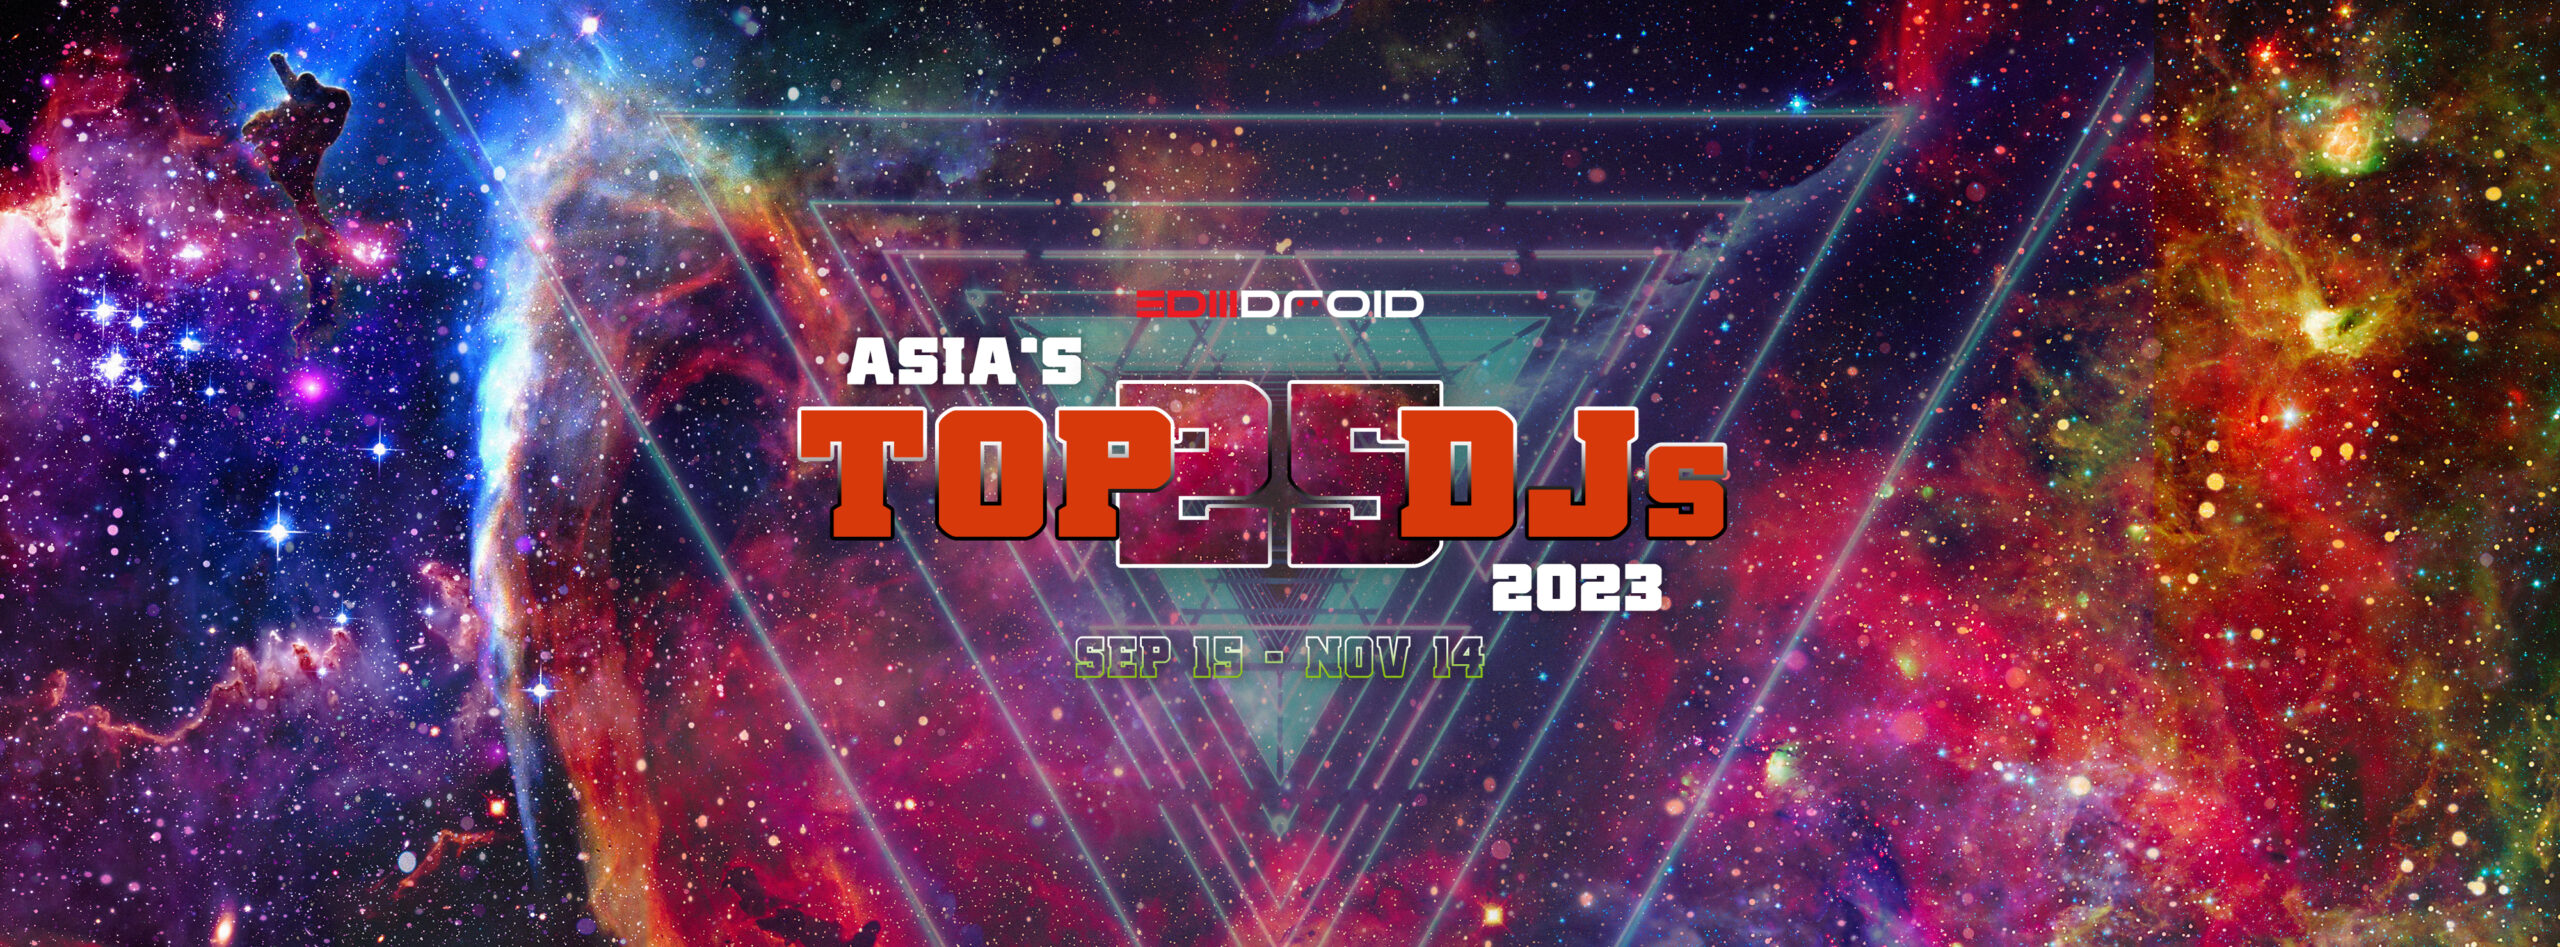 Asia’s DJs of 2023